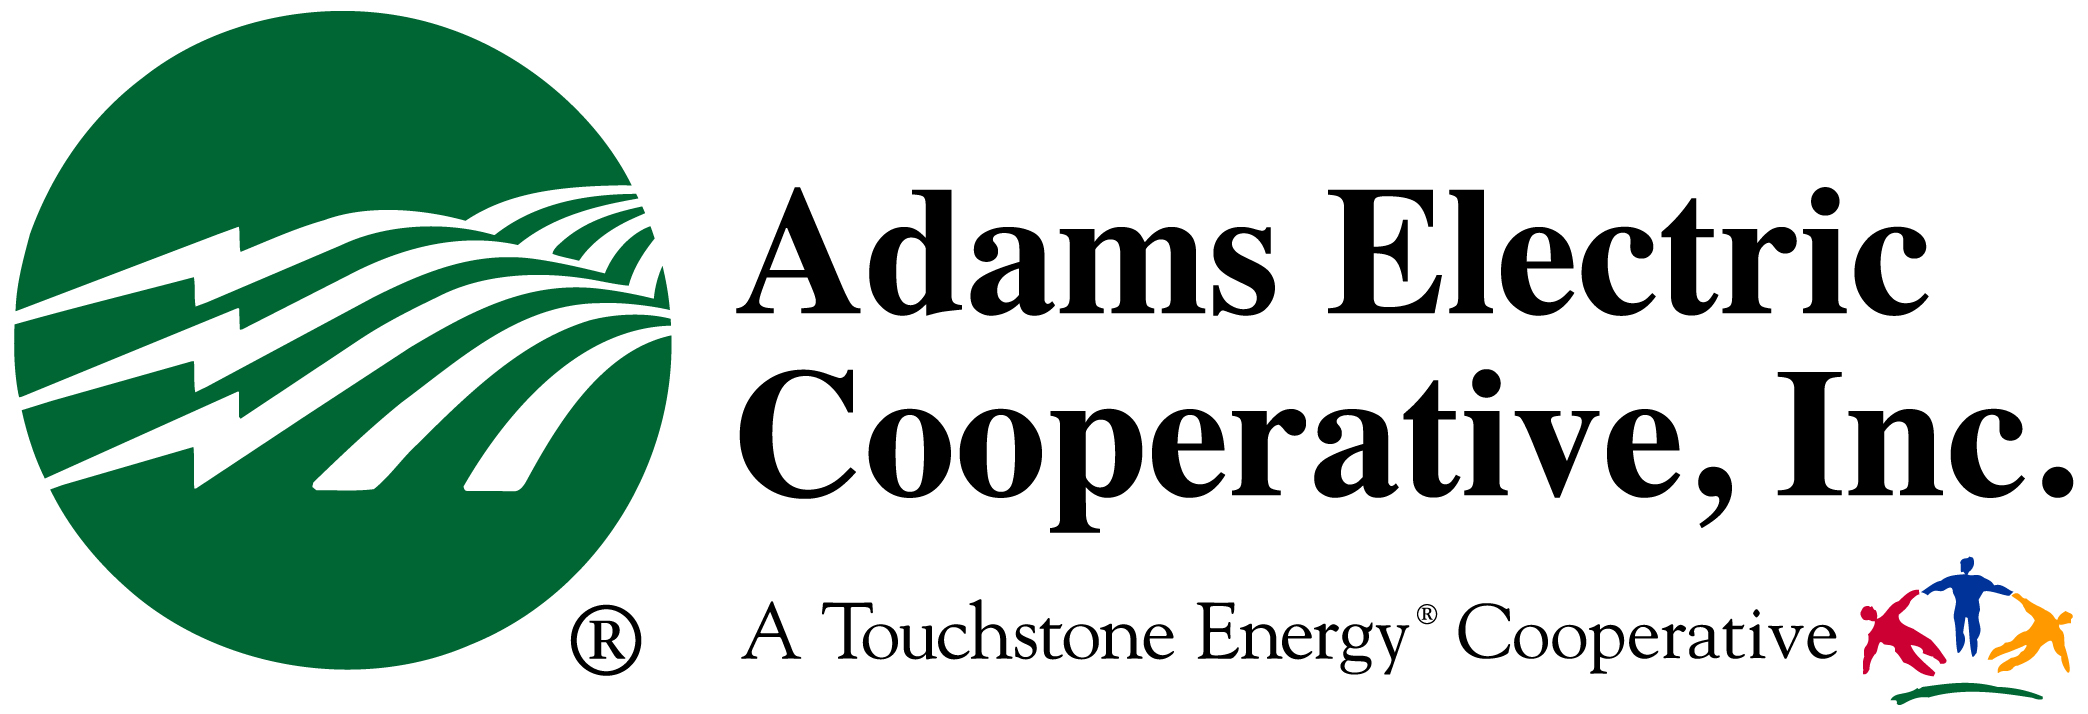 Adams Electric Coop Inc